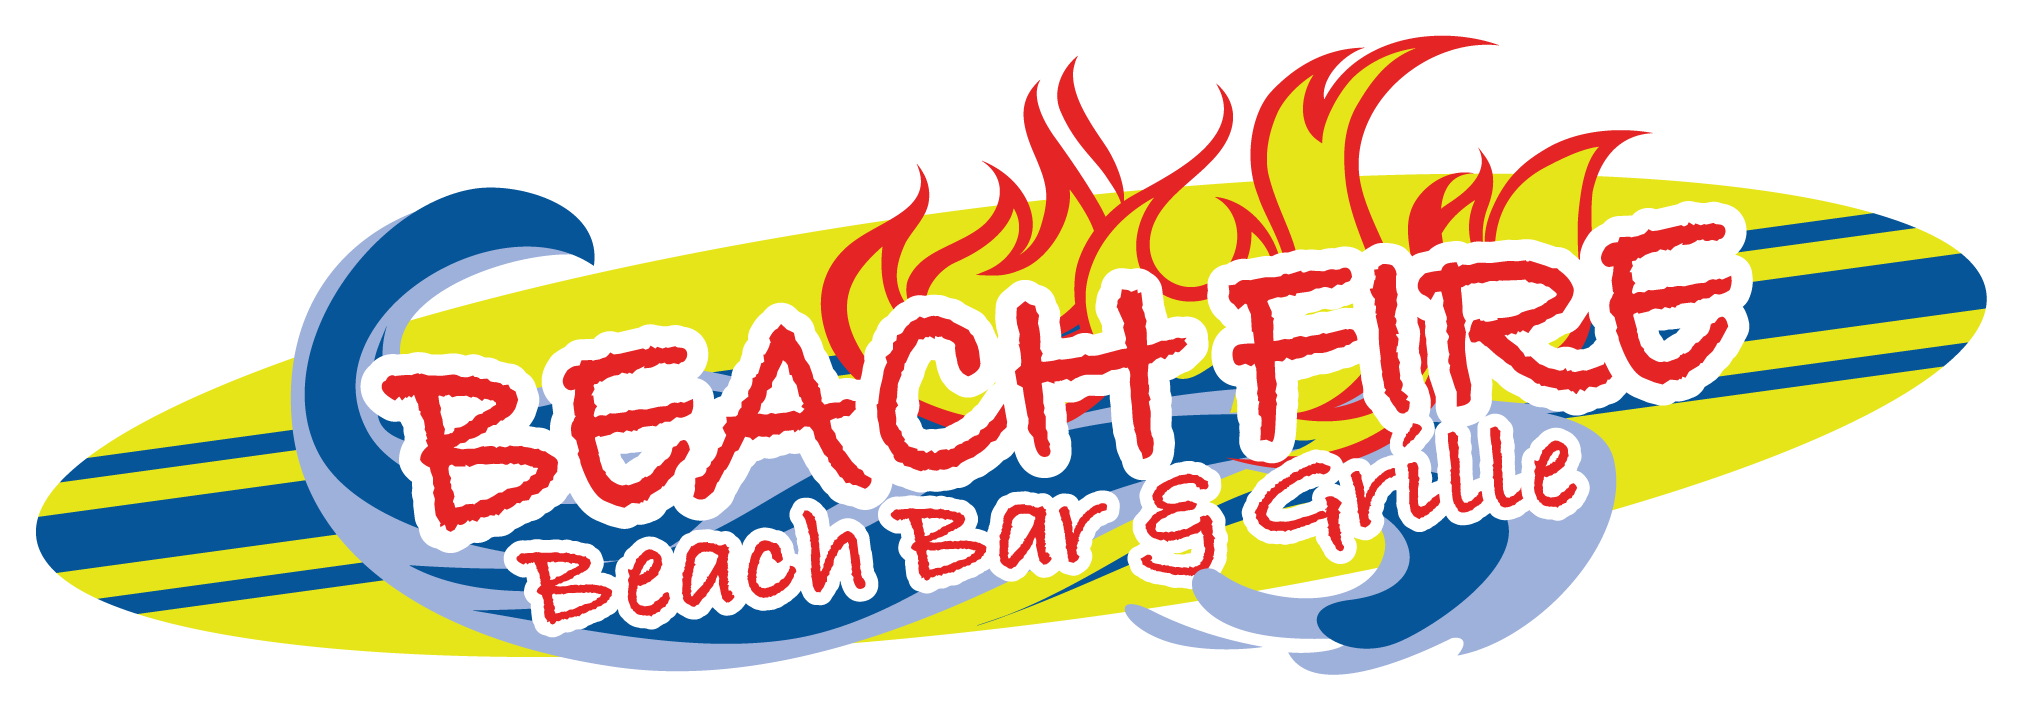 Beach Fire Beach Bar & Grille, Clearwater